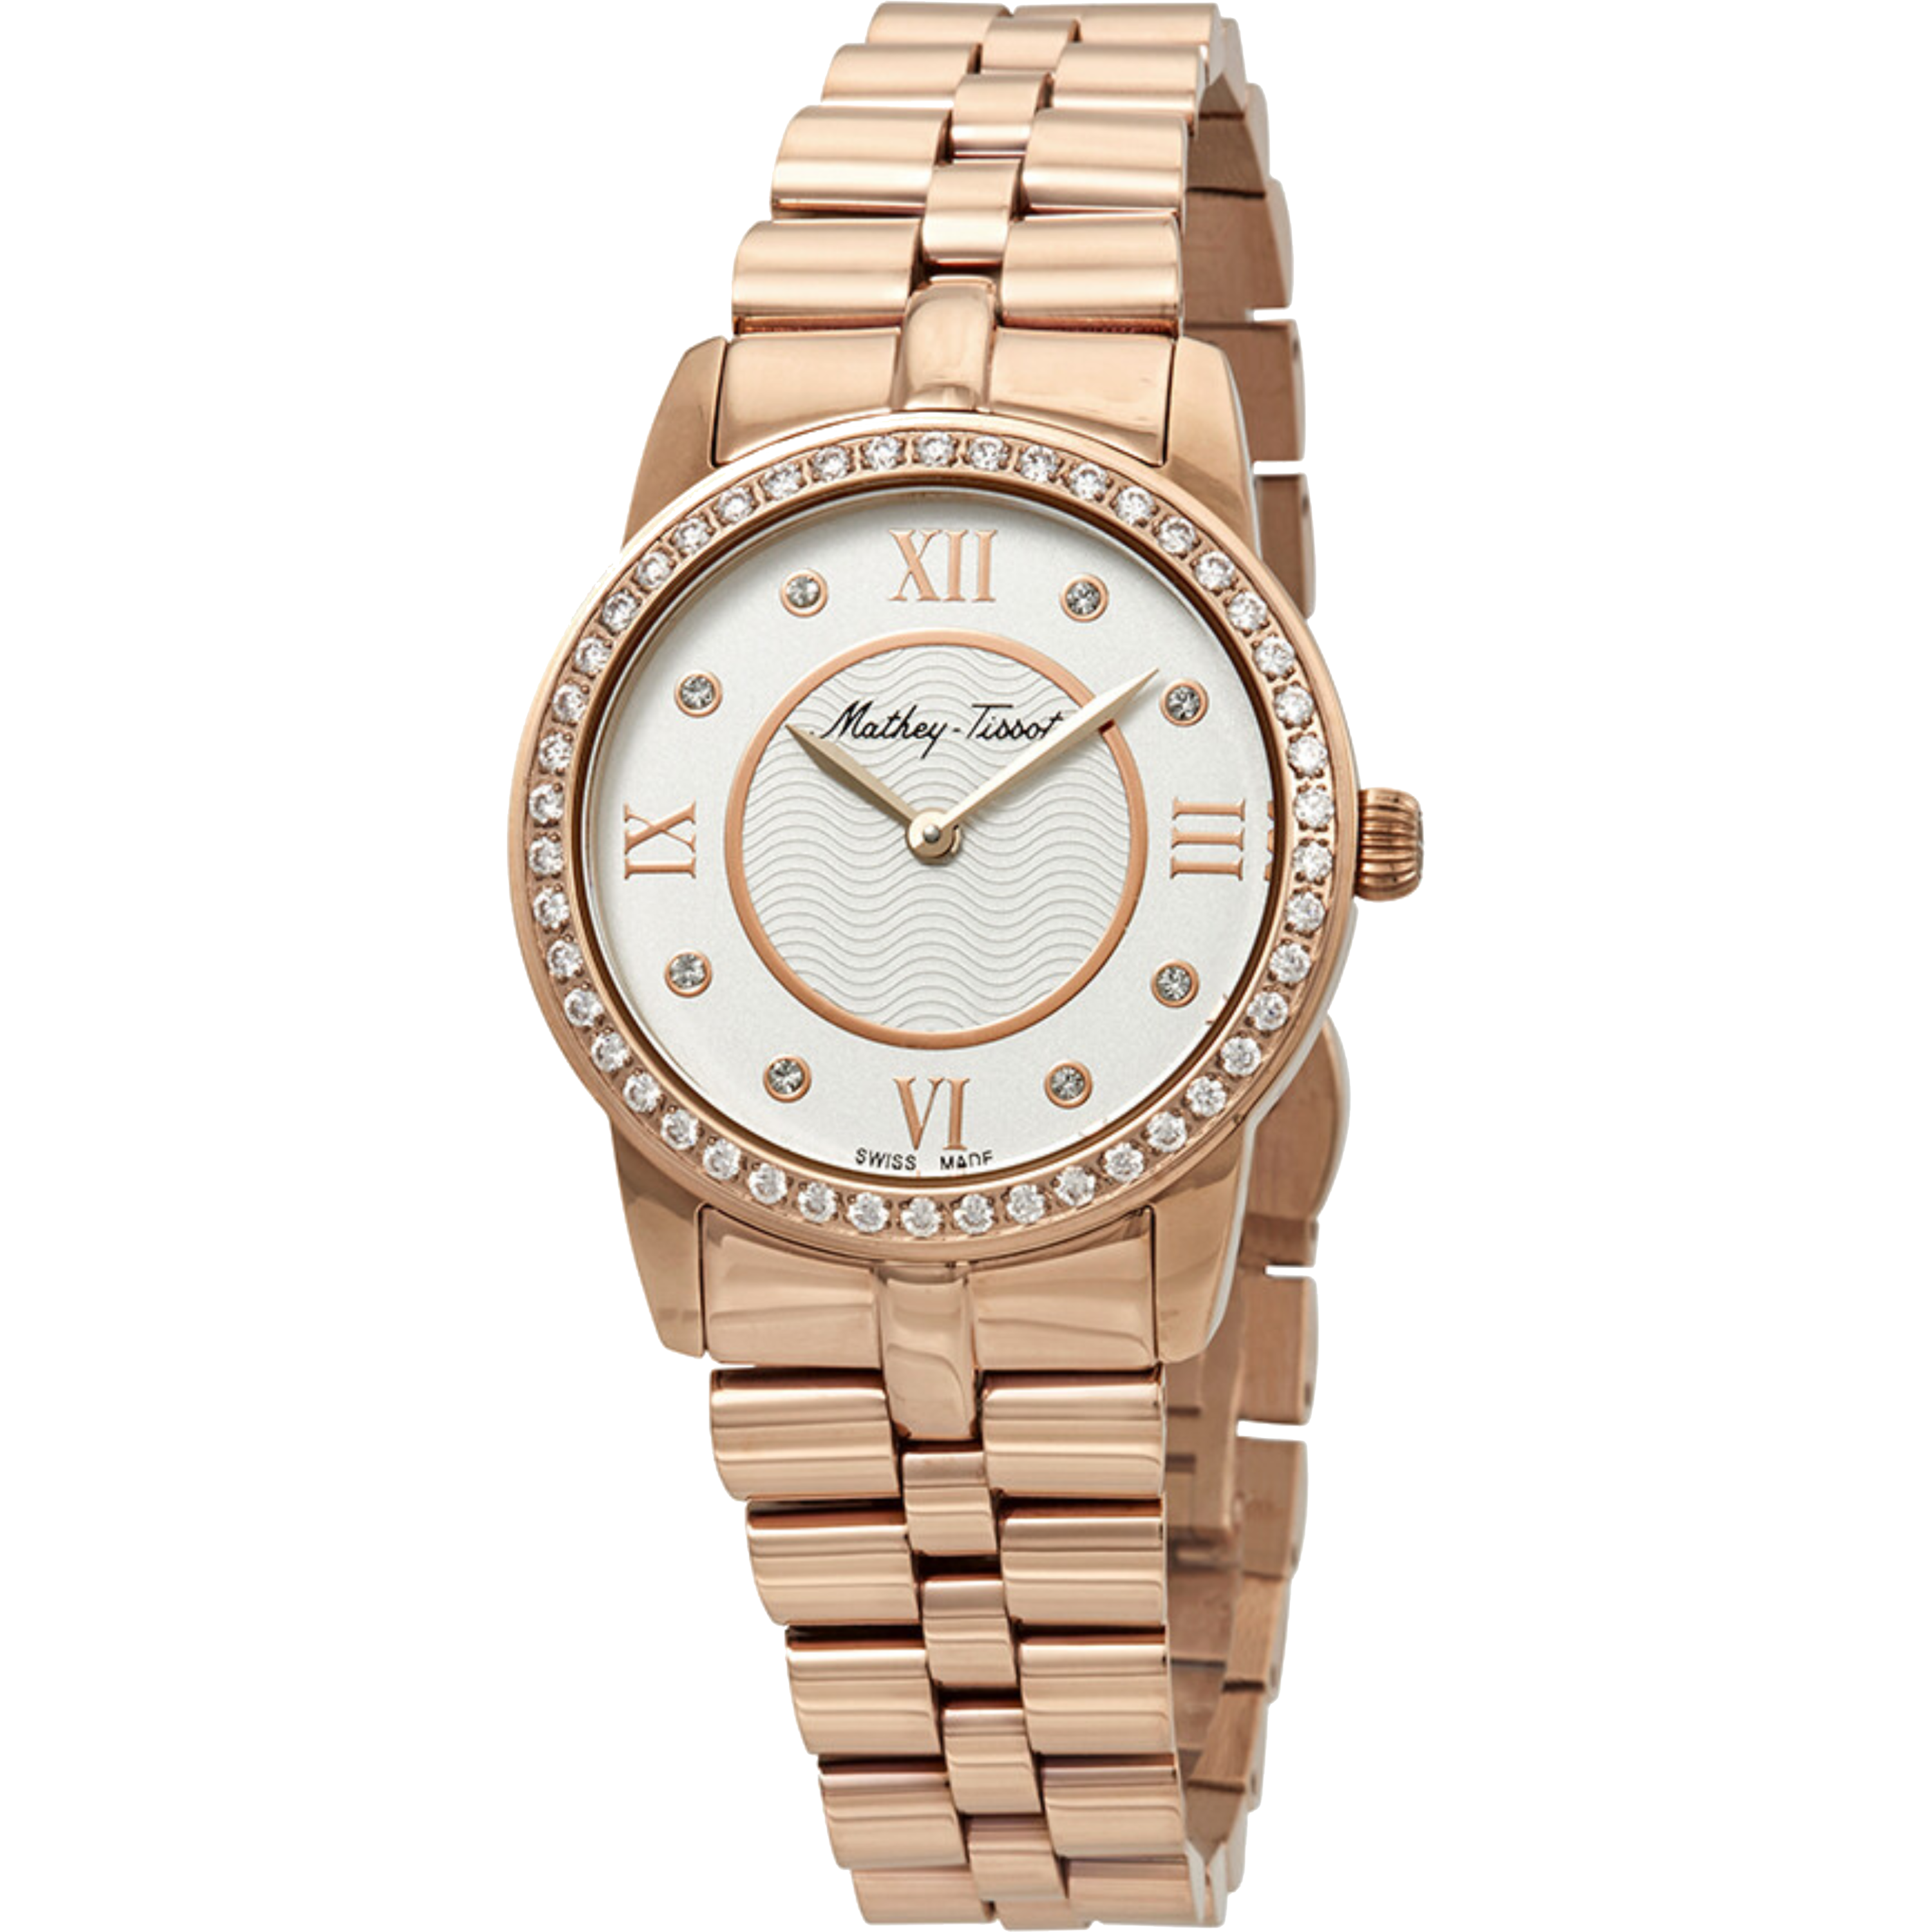 שעון יד לאישה Mathey Tissot D1086PQI 32mm צבע רוז גולד/משובץ - אחריות לשנה ע"י היבואן